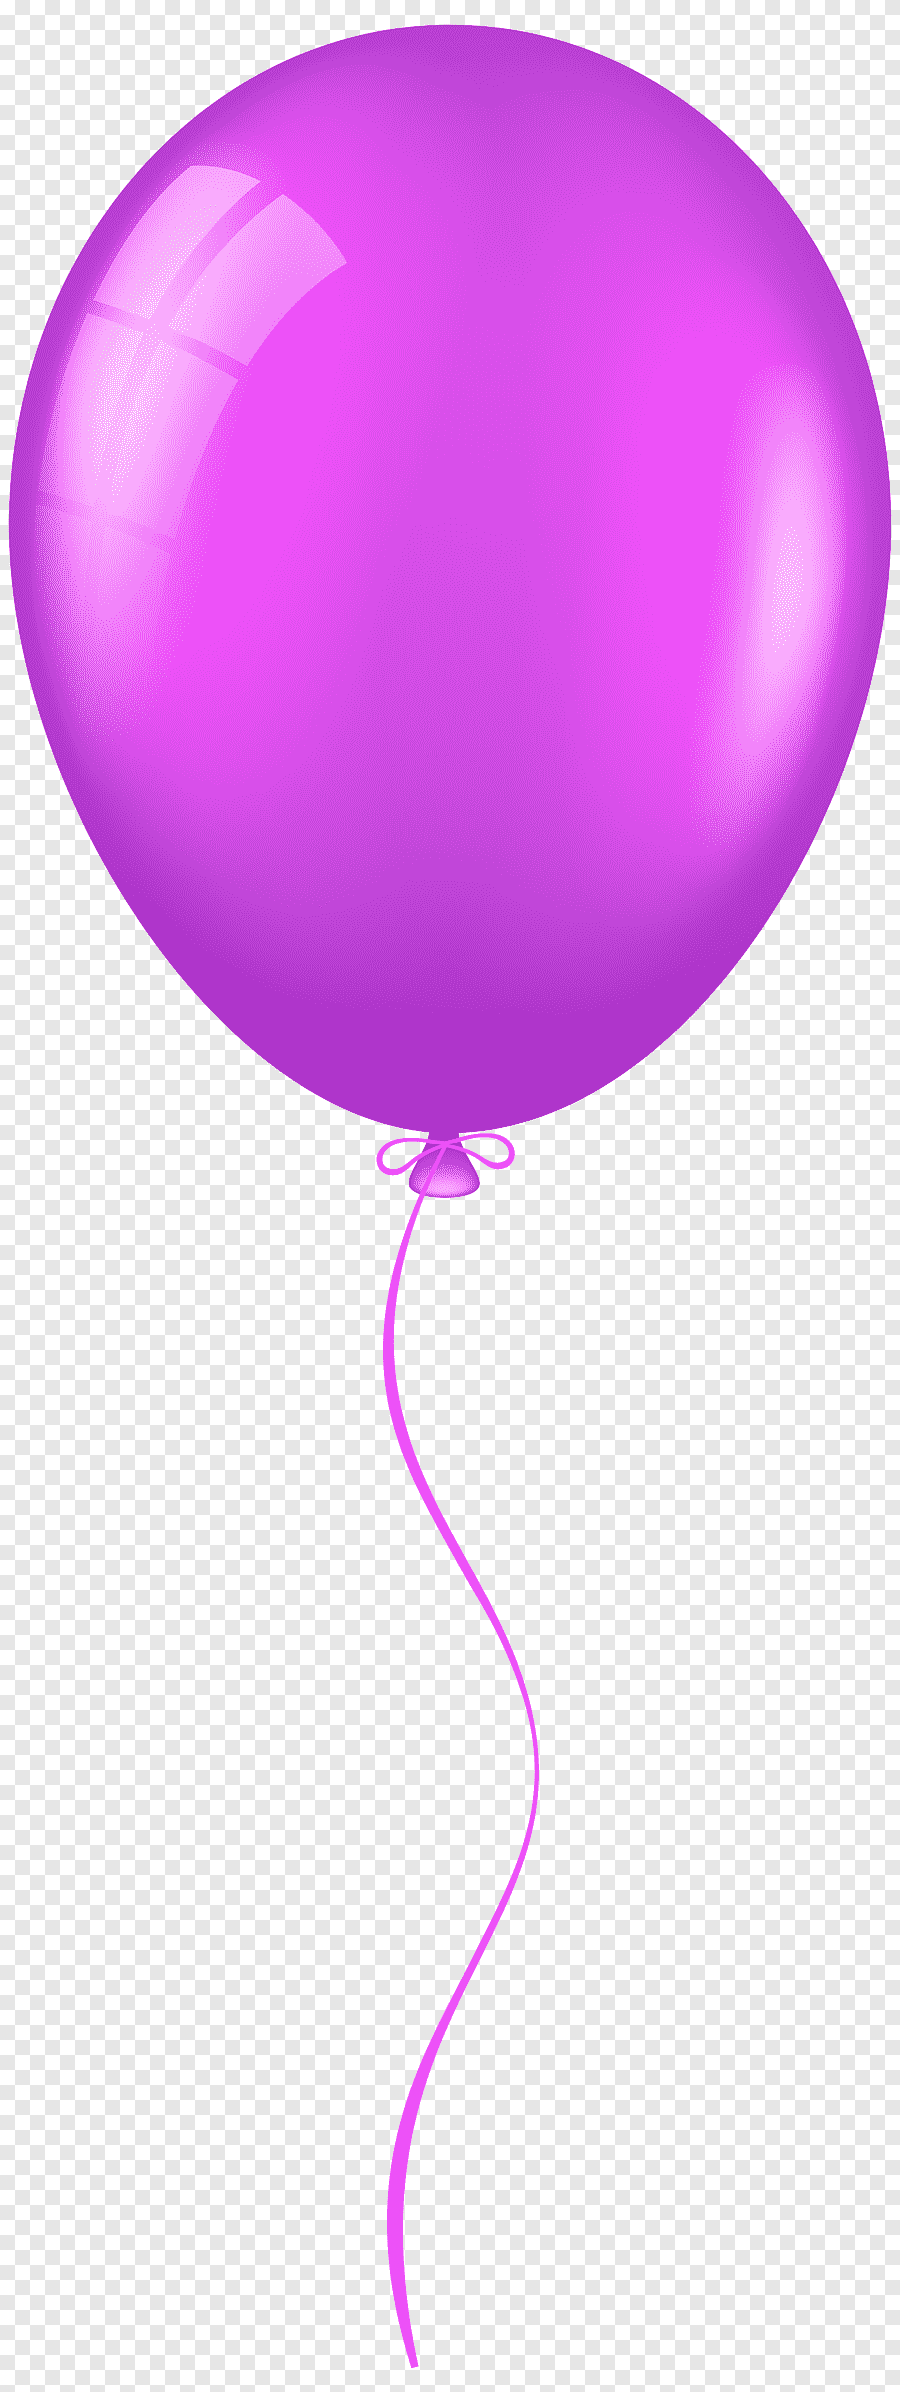 Картинка шар на прозрачном фоне. Воздушные шарики фиолетовые. Сиреневый воздушный шарик. Воздушный шар фиолетовый. Шарики на прозрачном фоне.